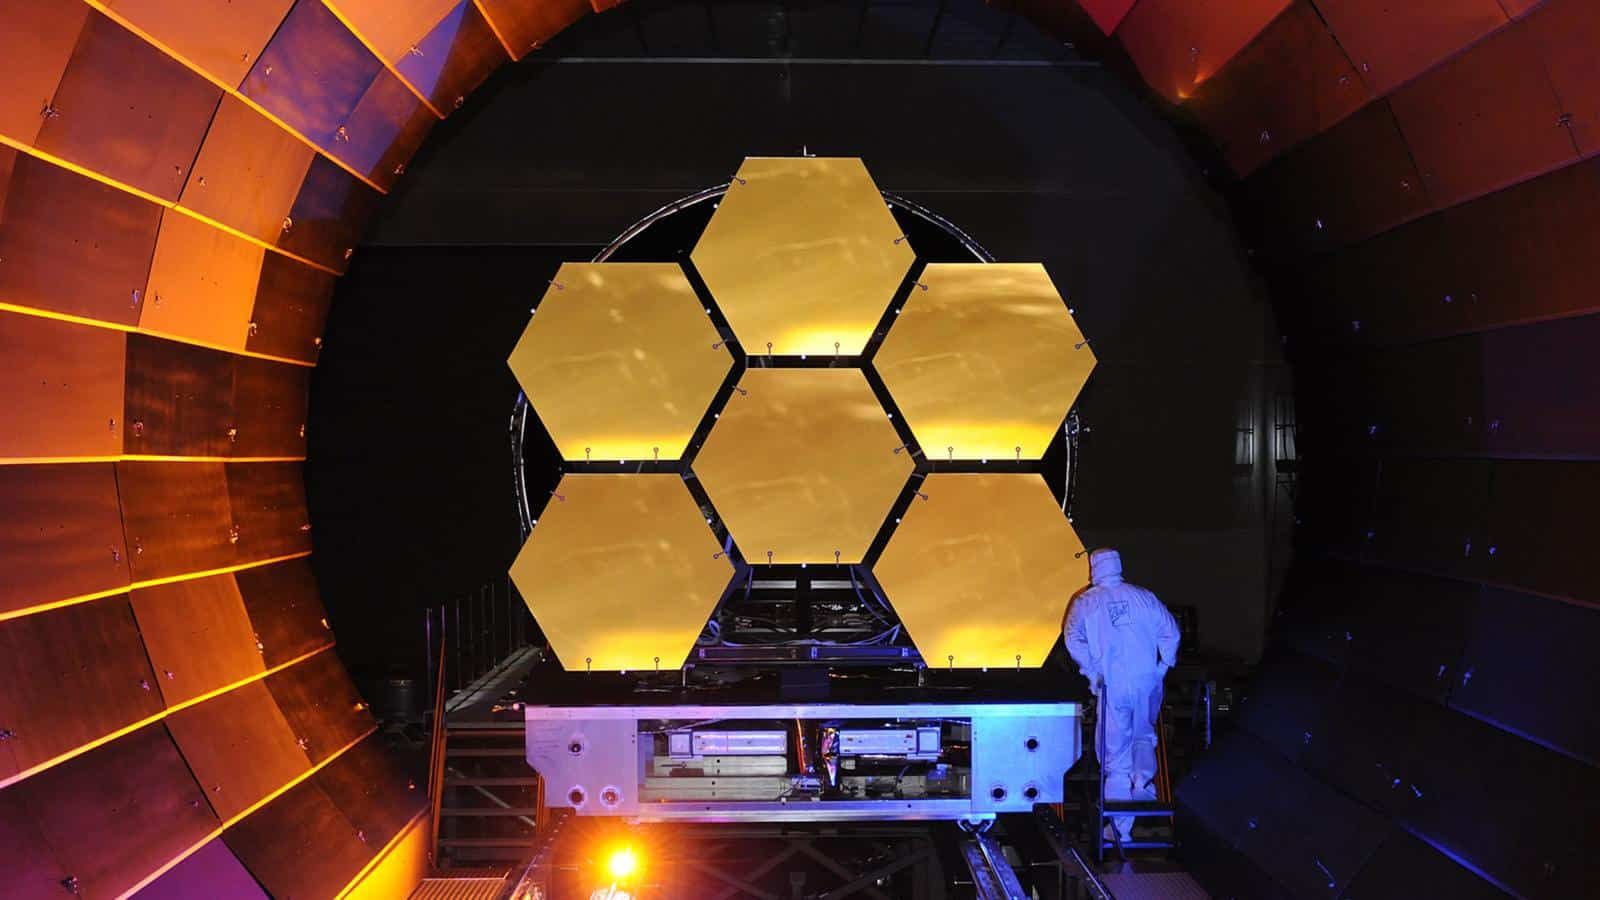 Запуск найпотужнішого телескопа James Webb знову перенесли